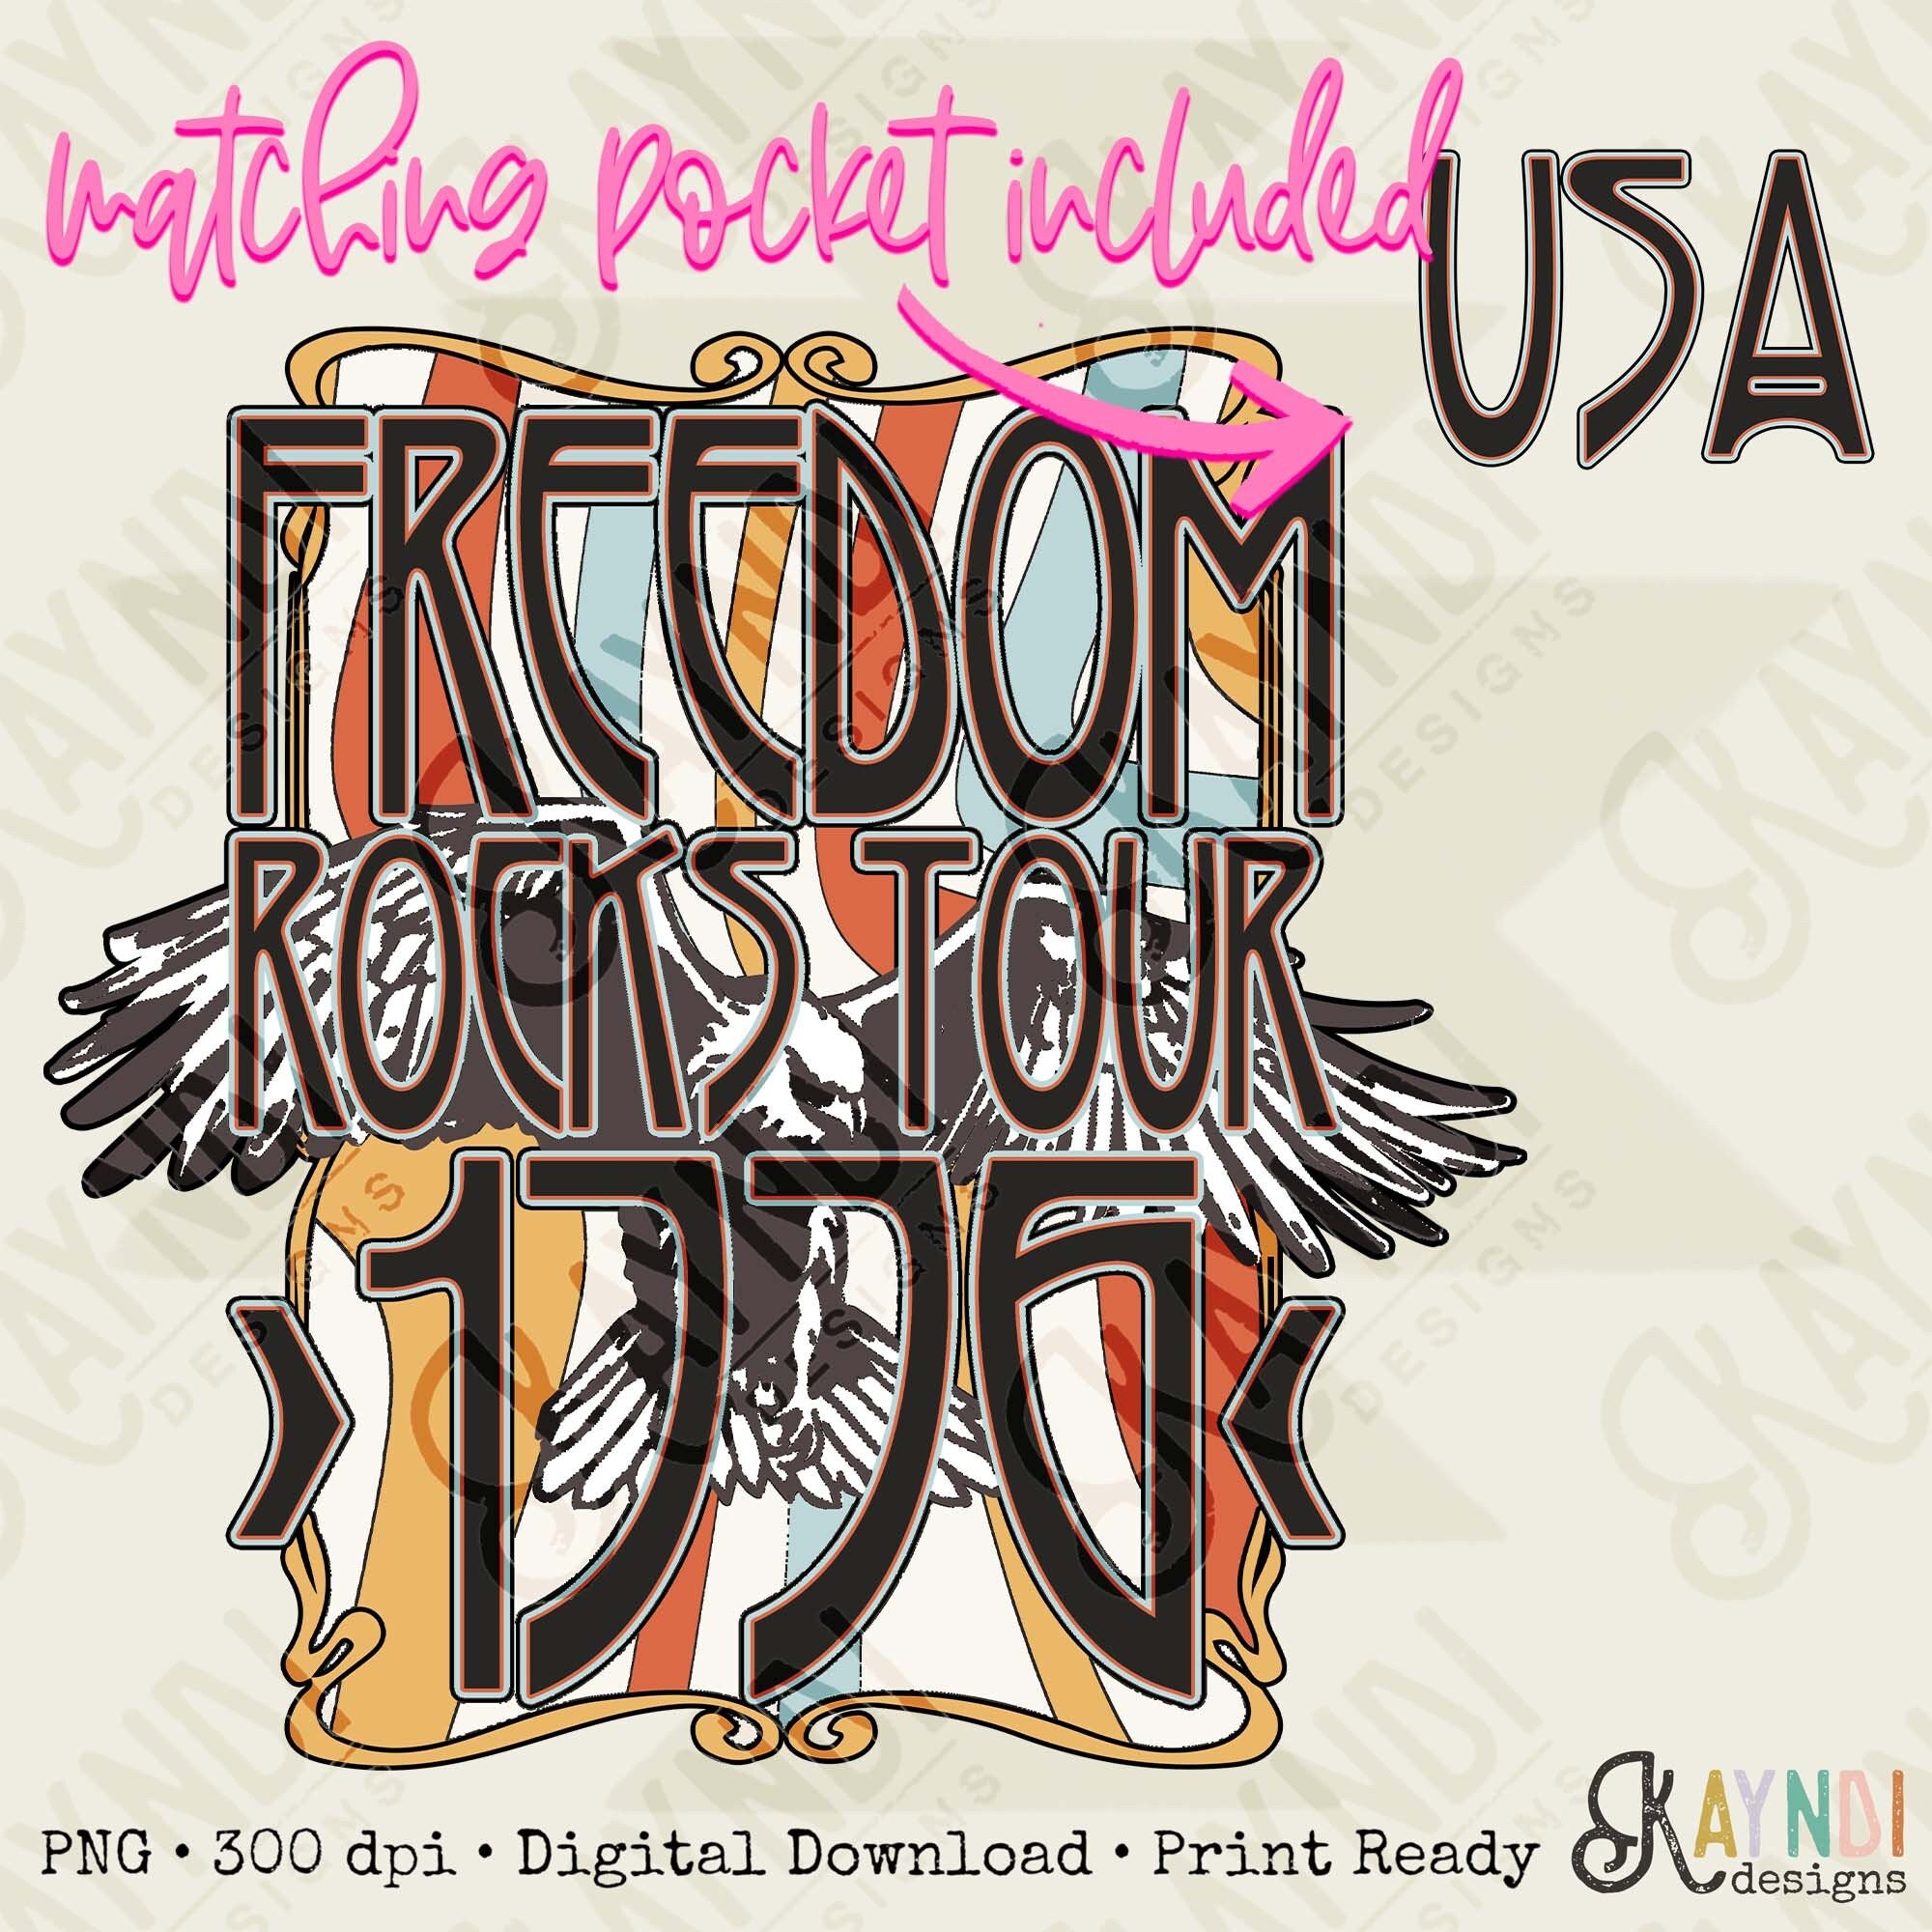 Freedom Rocks Tour Pocket Included Sublimation Design PNG Digital Download Printable